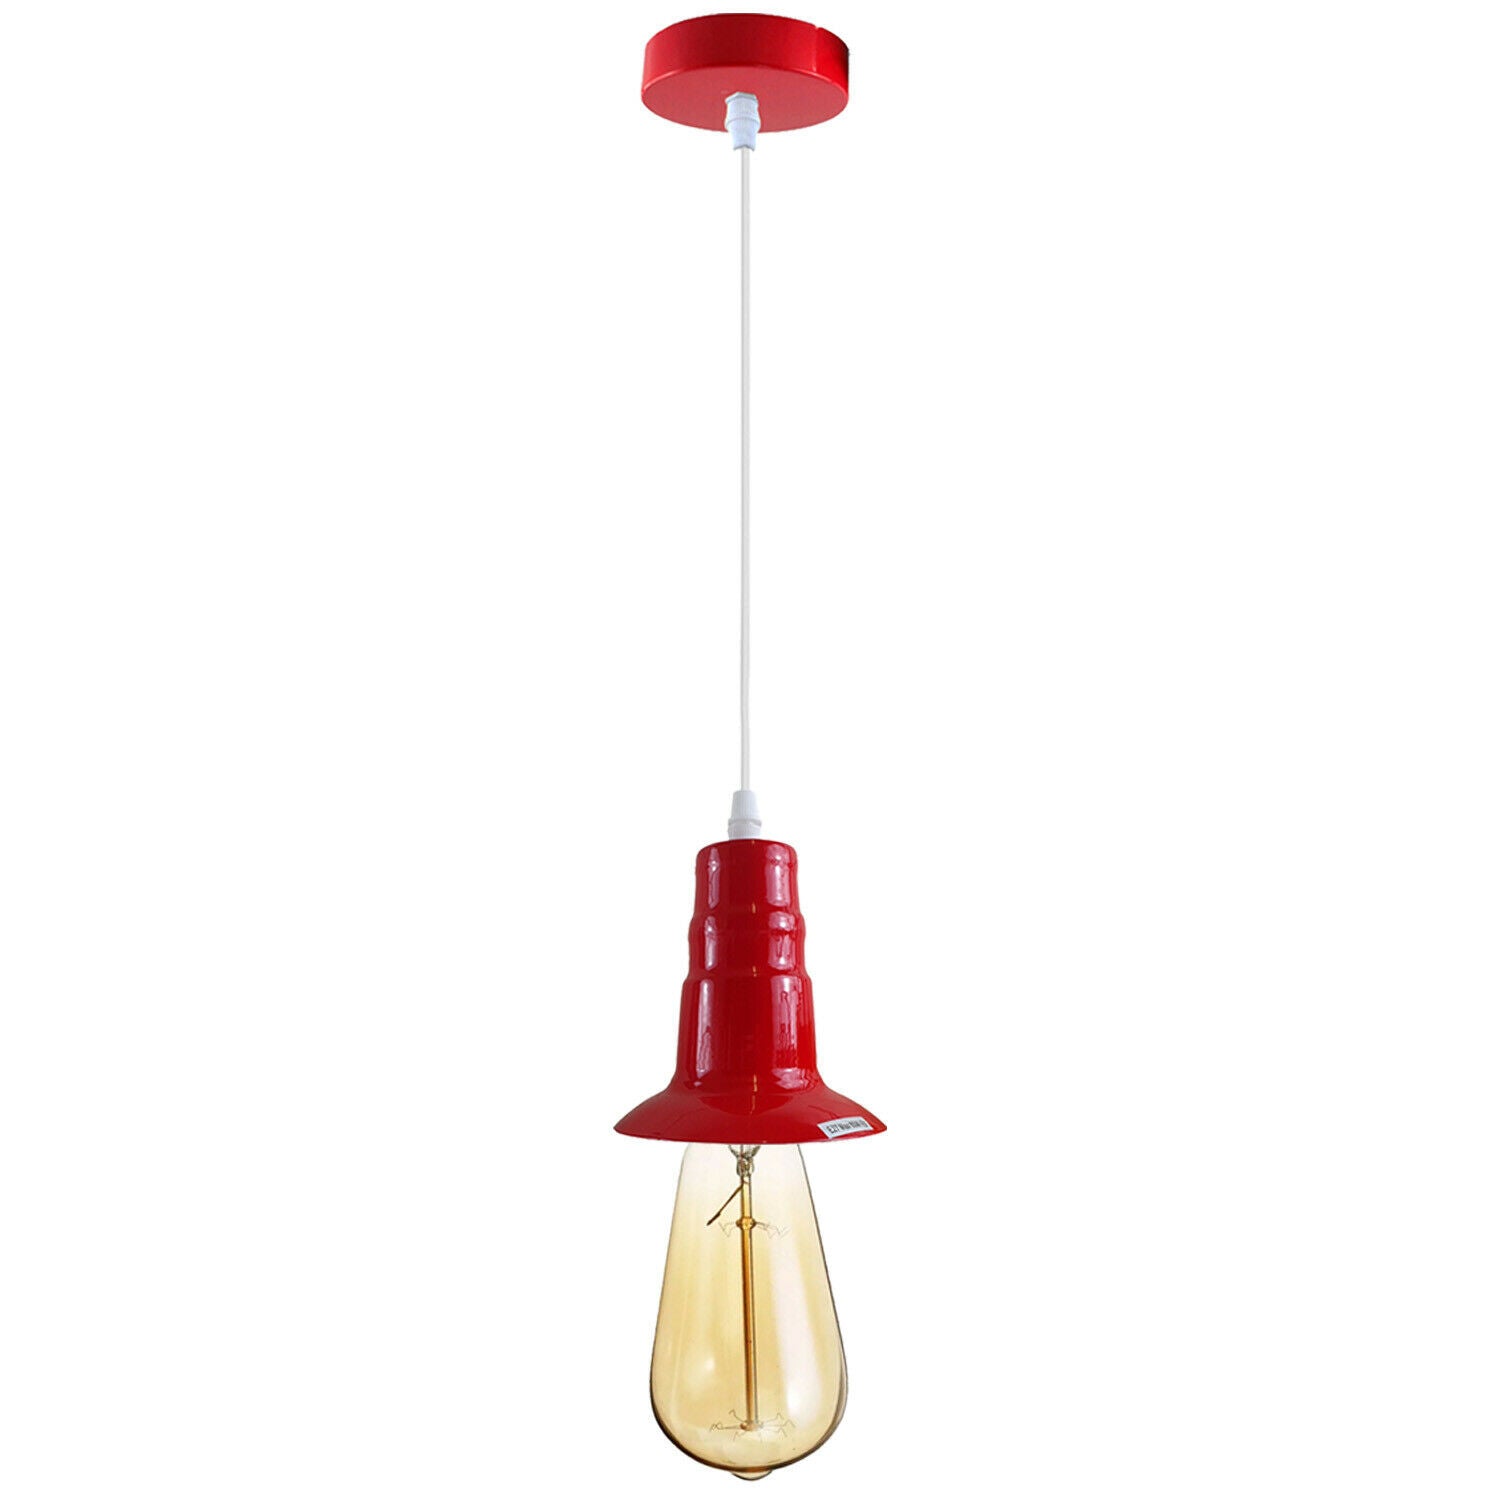 Red Ceiling Light Fitting Industrial Pendant Lamp Bulb Holder~1679 - LEDSone UK Ltd